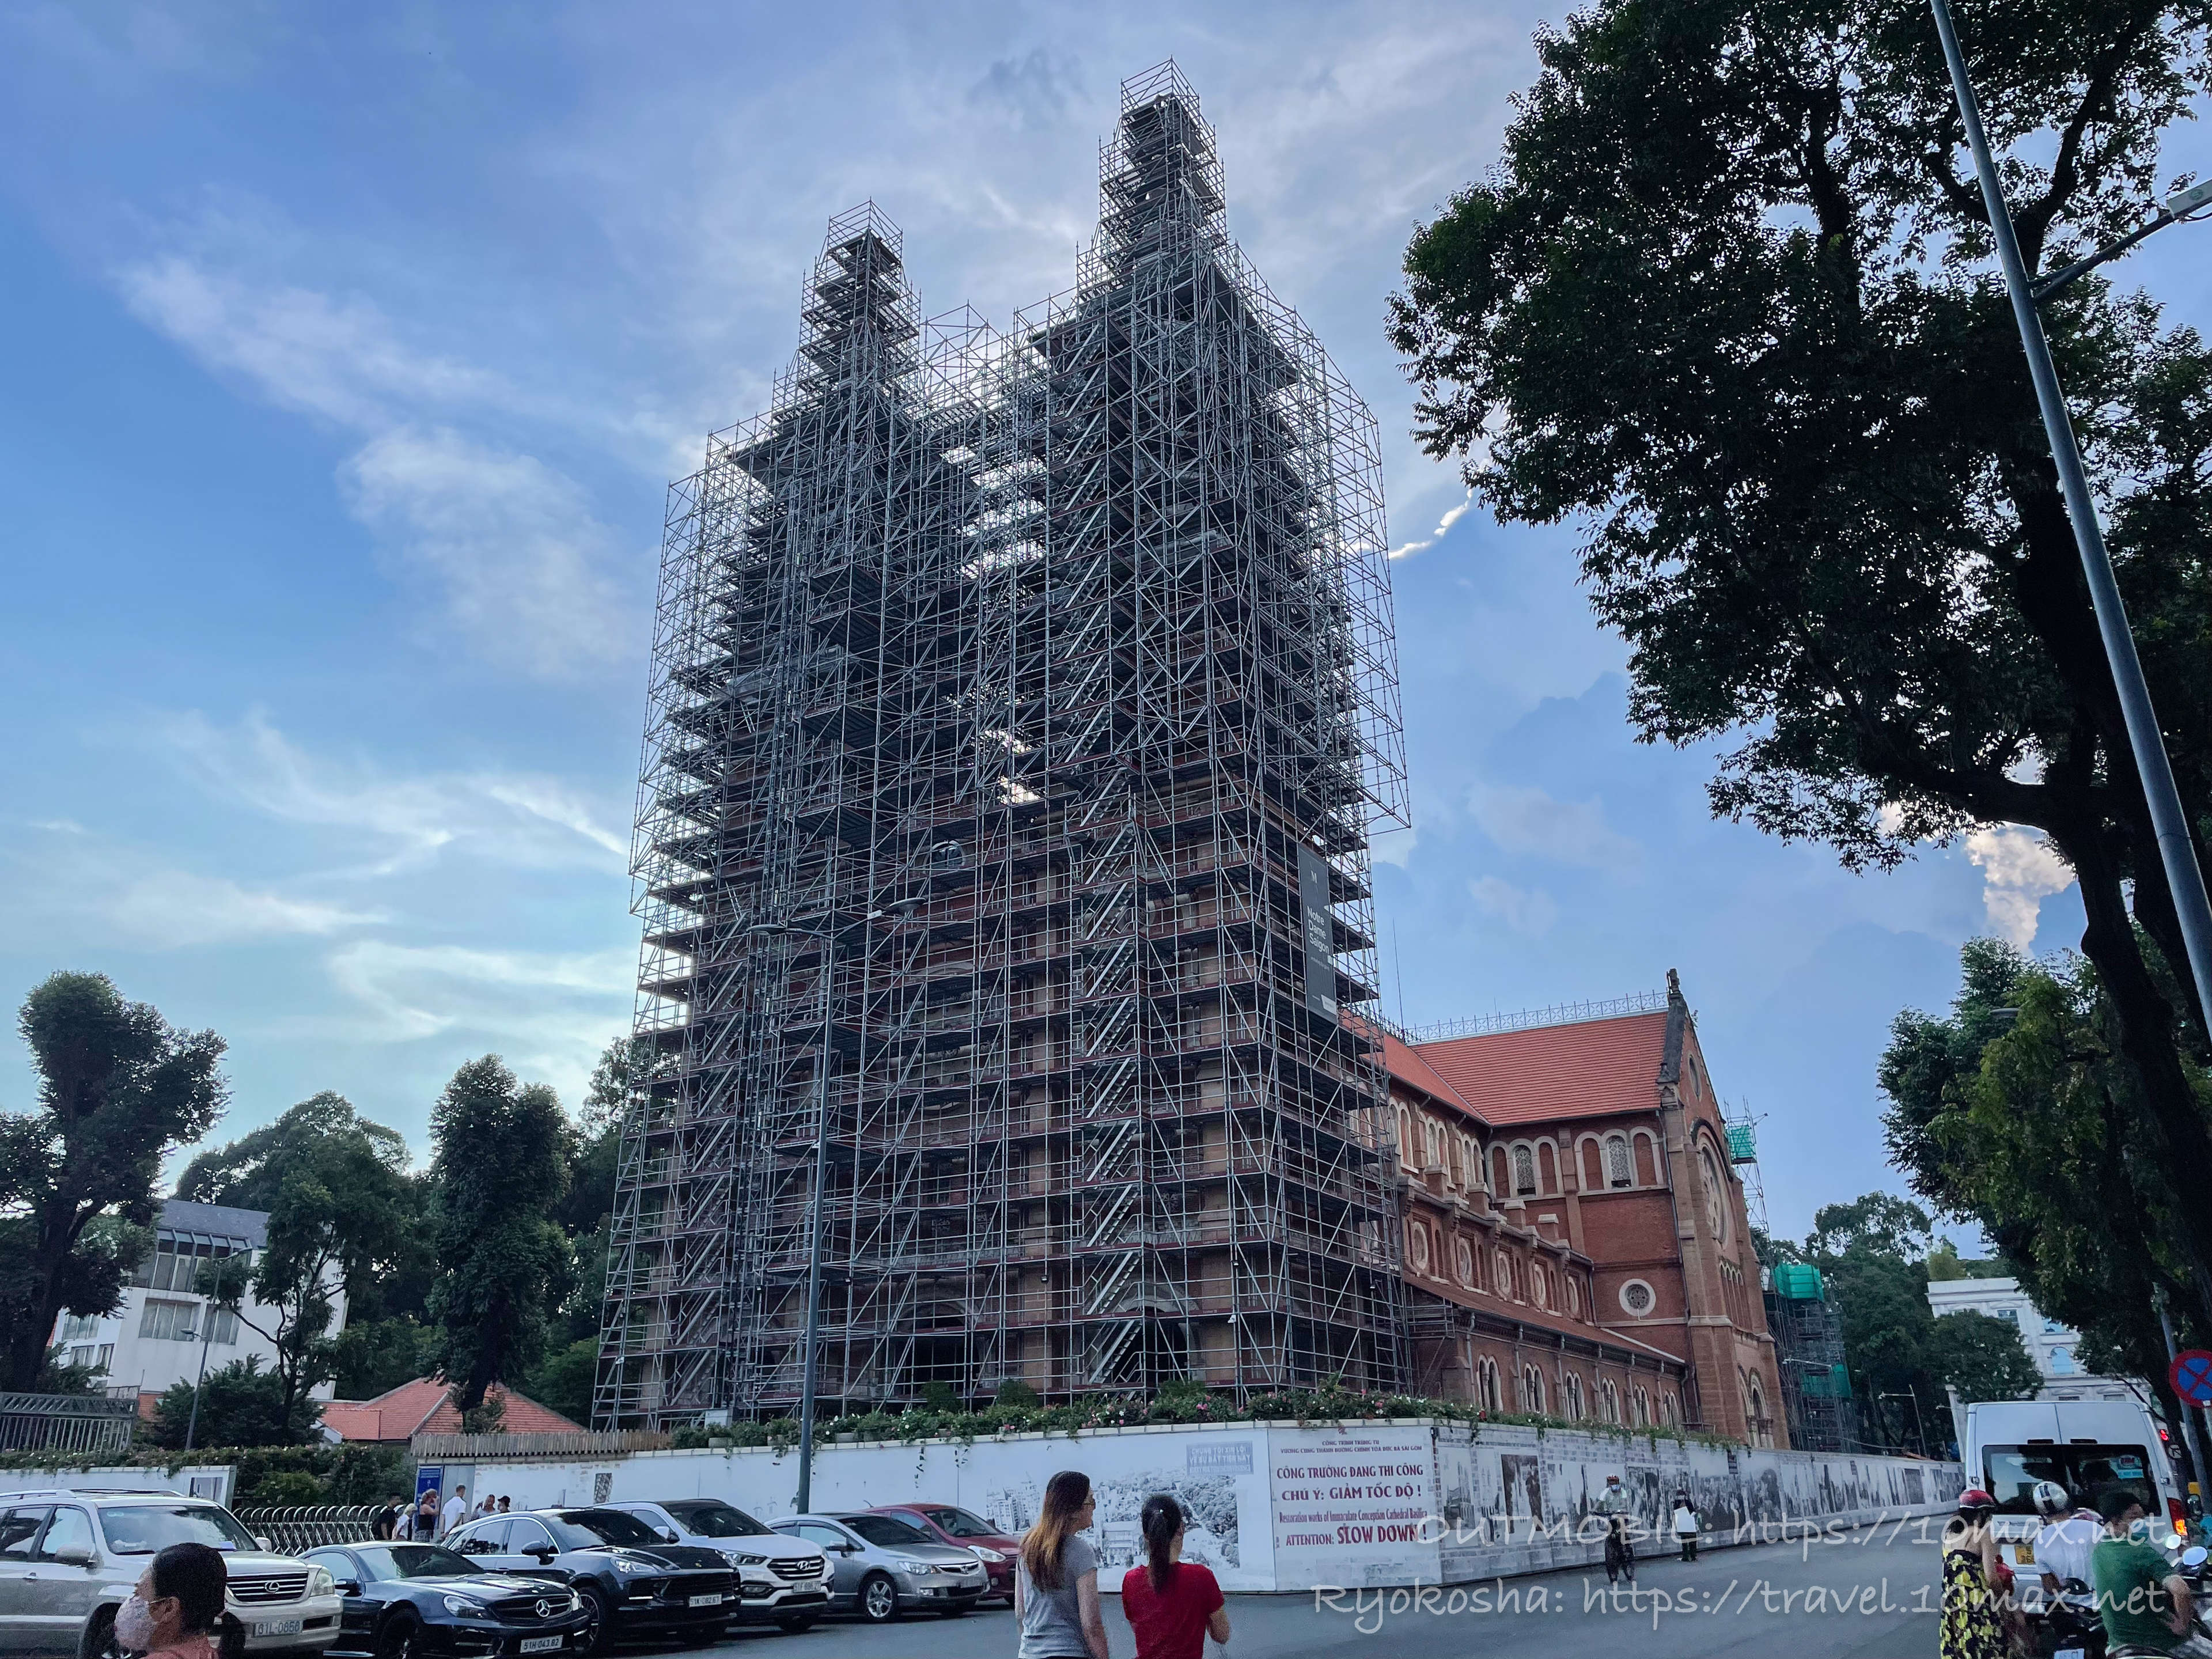 サイゴン大教会, 修復工事, いつ完了, 復元